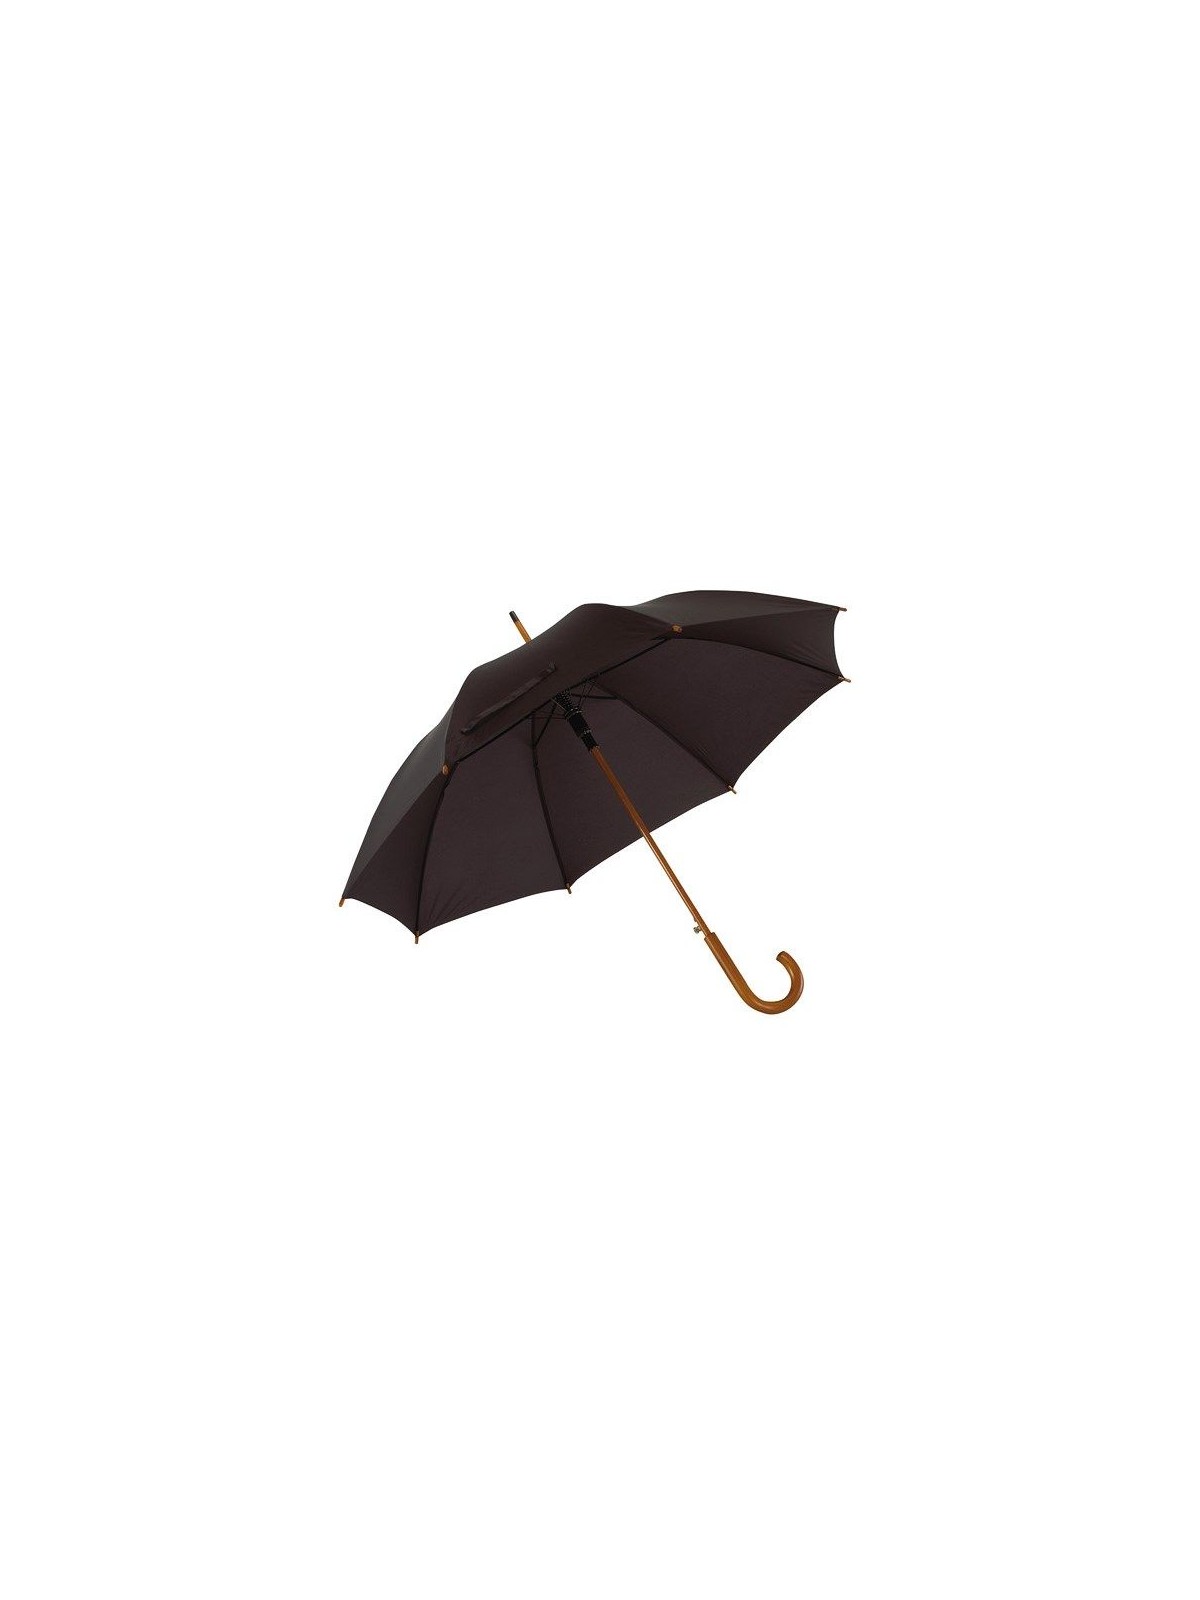 34-363 Parapluie publicitaire automatique en bois personnalisé